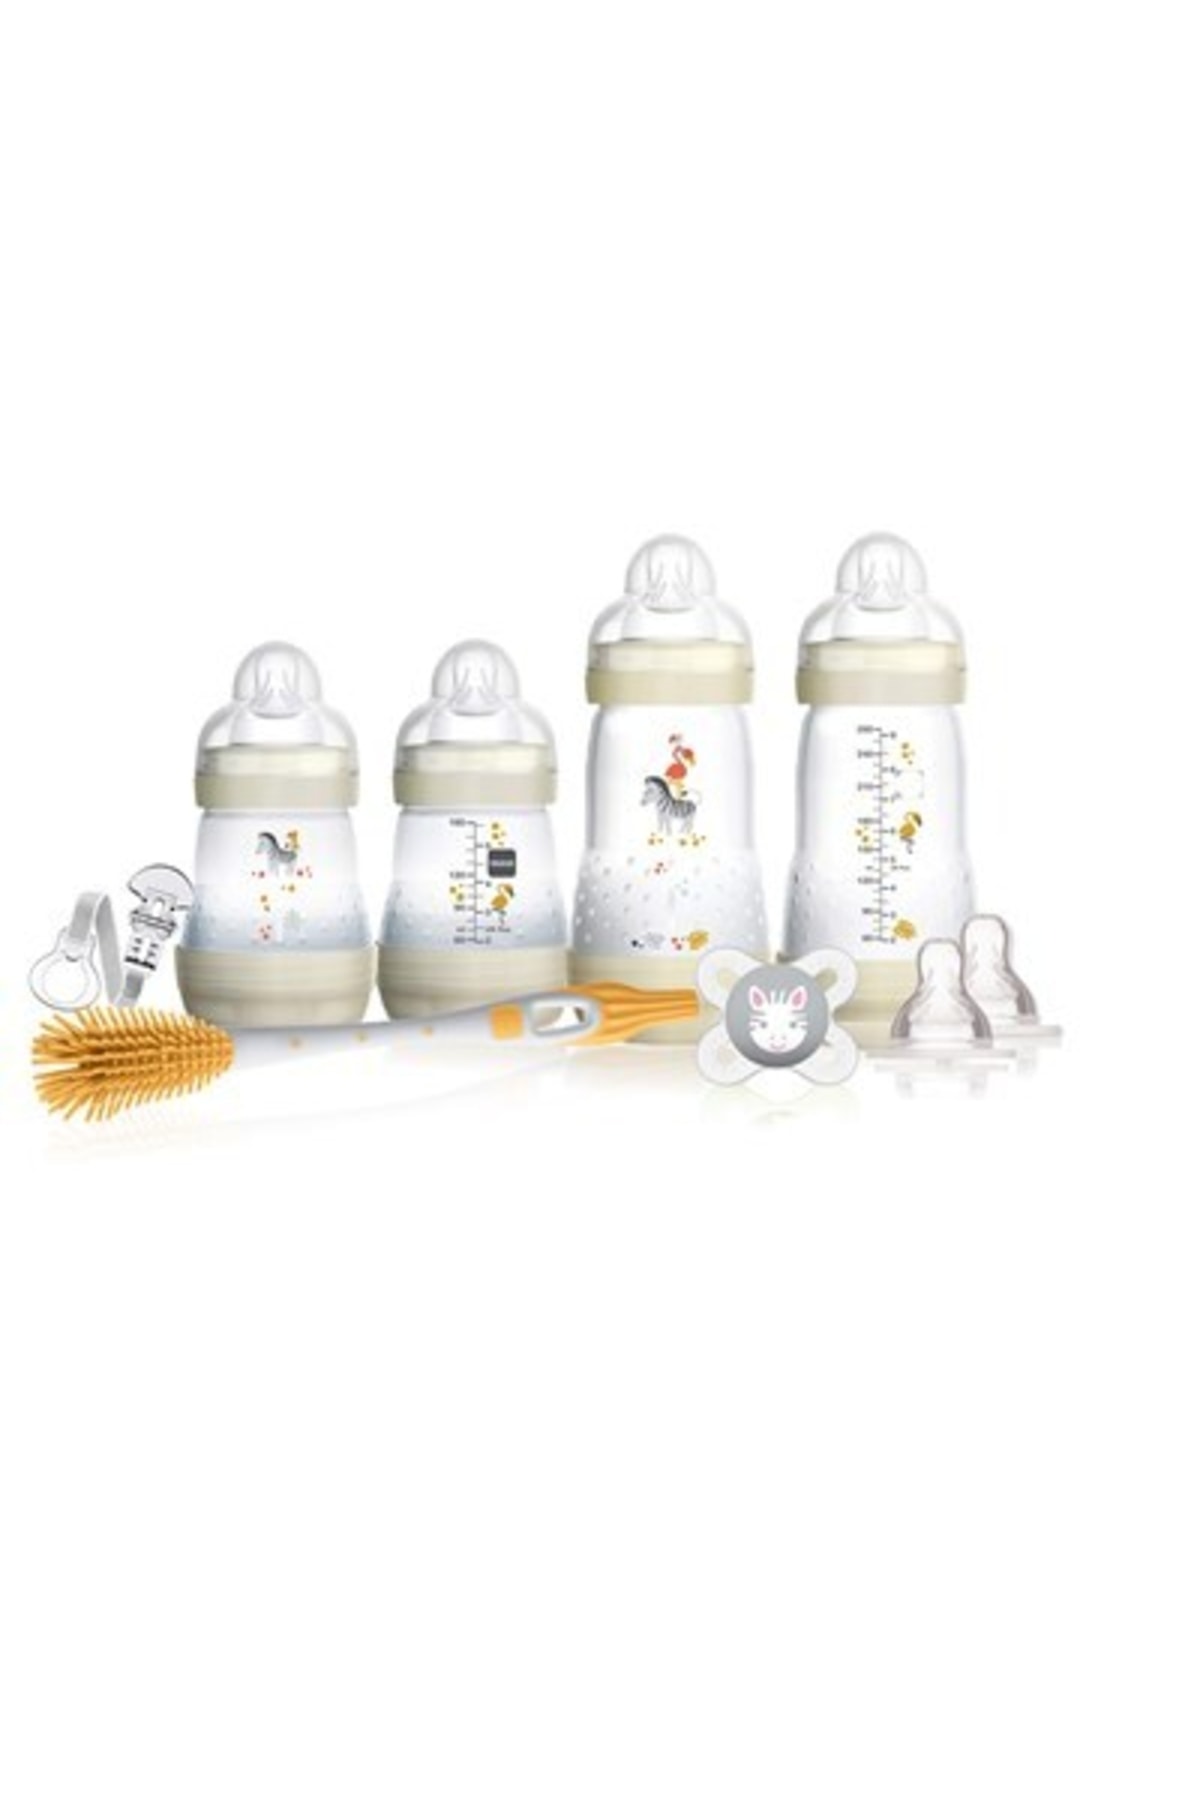 MAM Infant Basics 9 Parça, Antikolik Biberonlu Hediye Seti 150ml/270ml 0 (YURT DIŞINDAN)